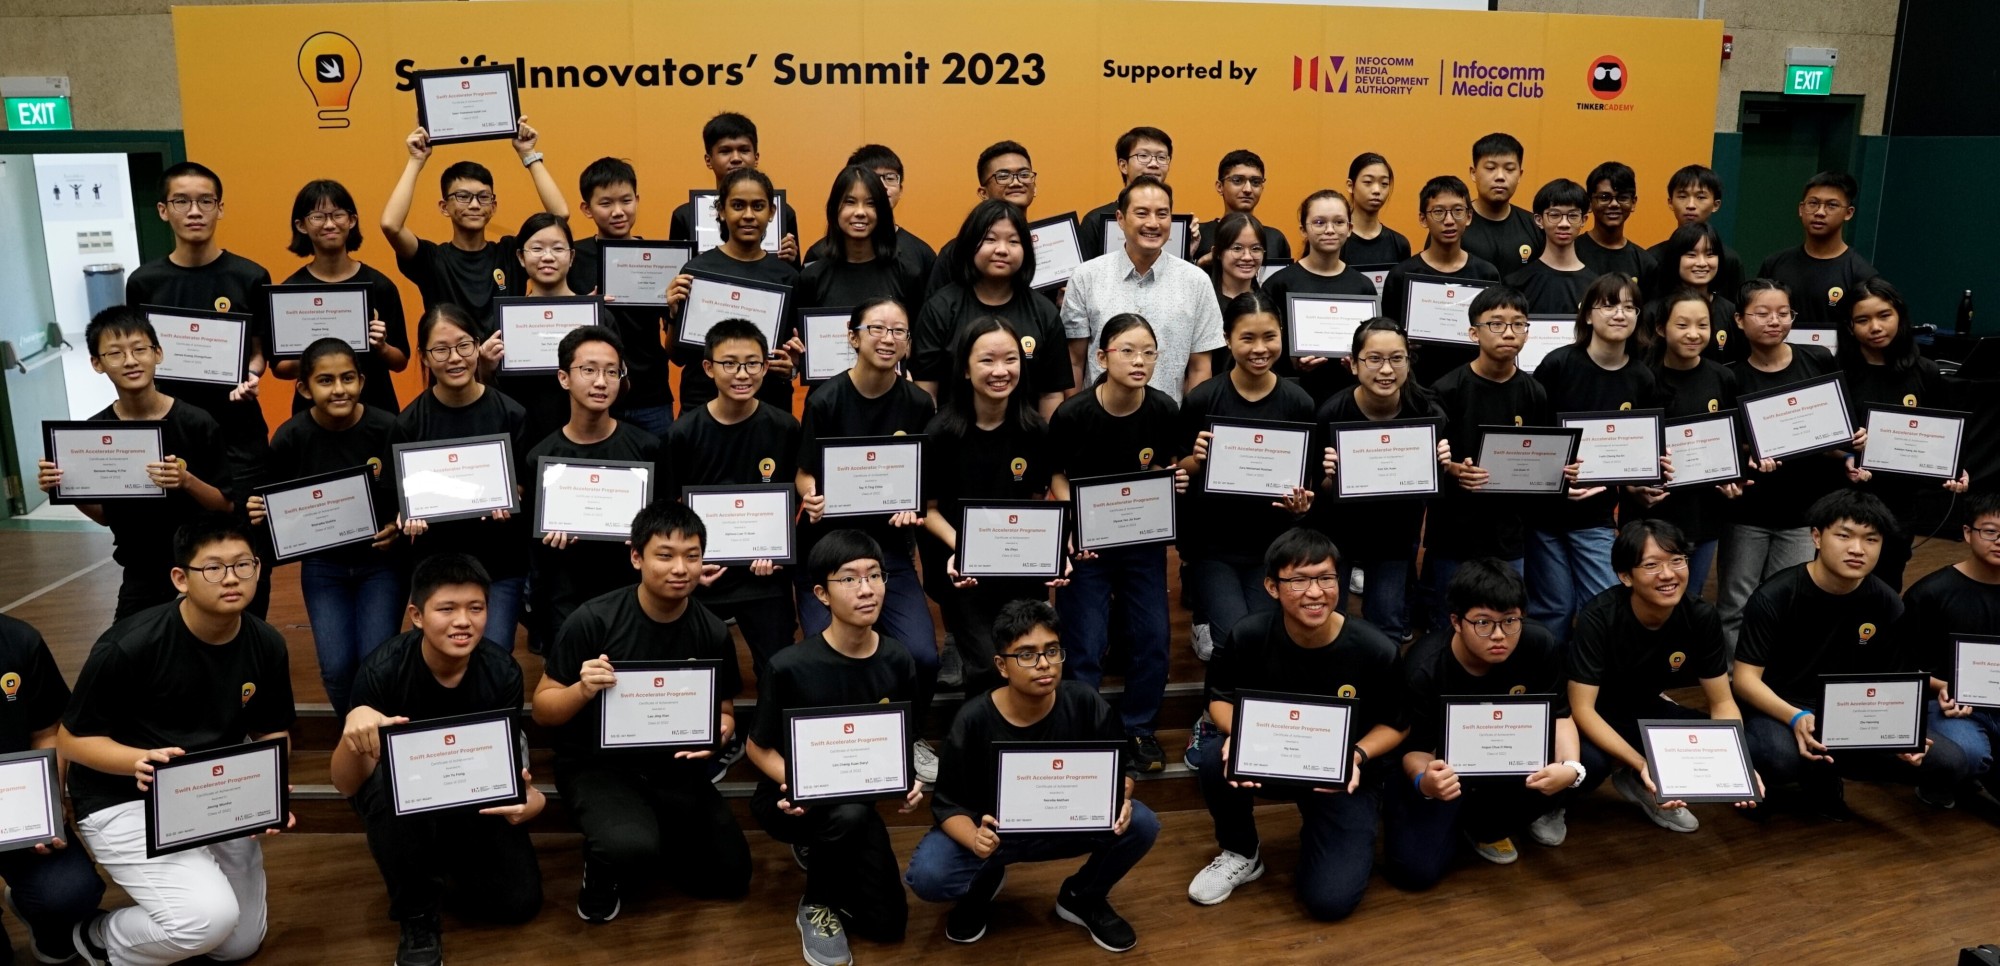 February: SJI Hosts Swift Innovators’ Summit